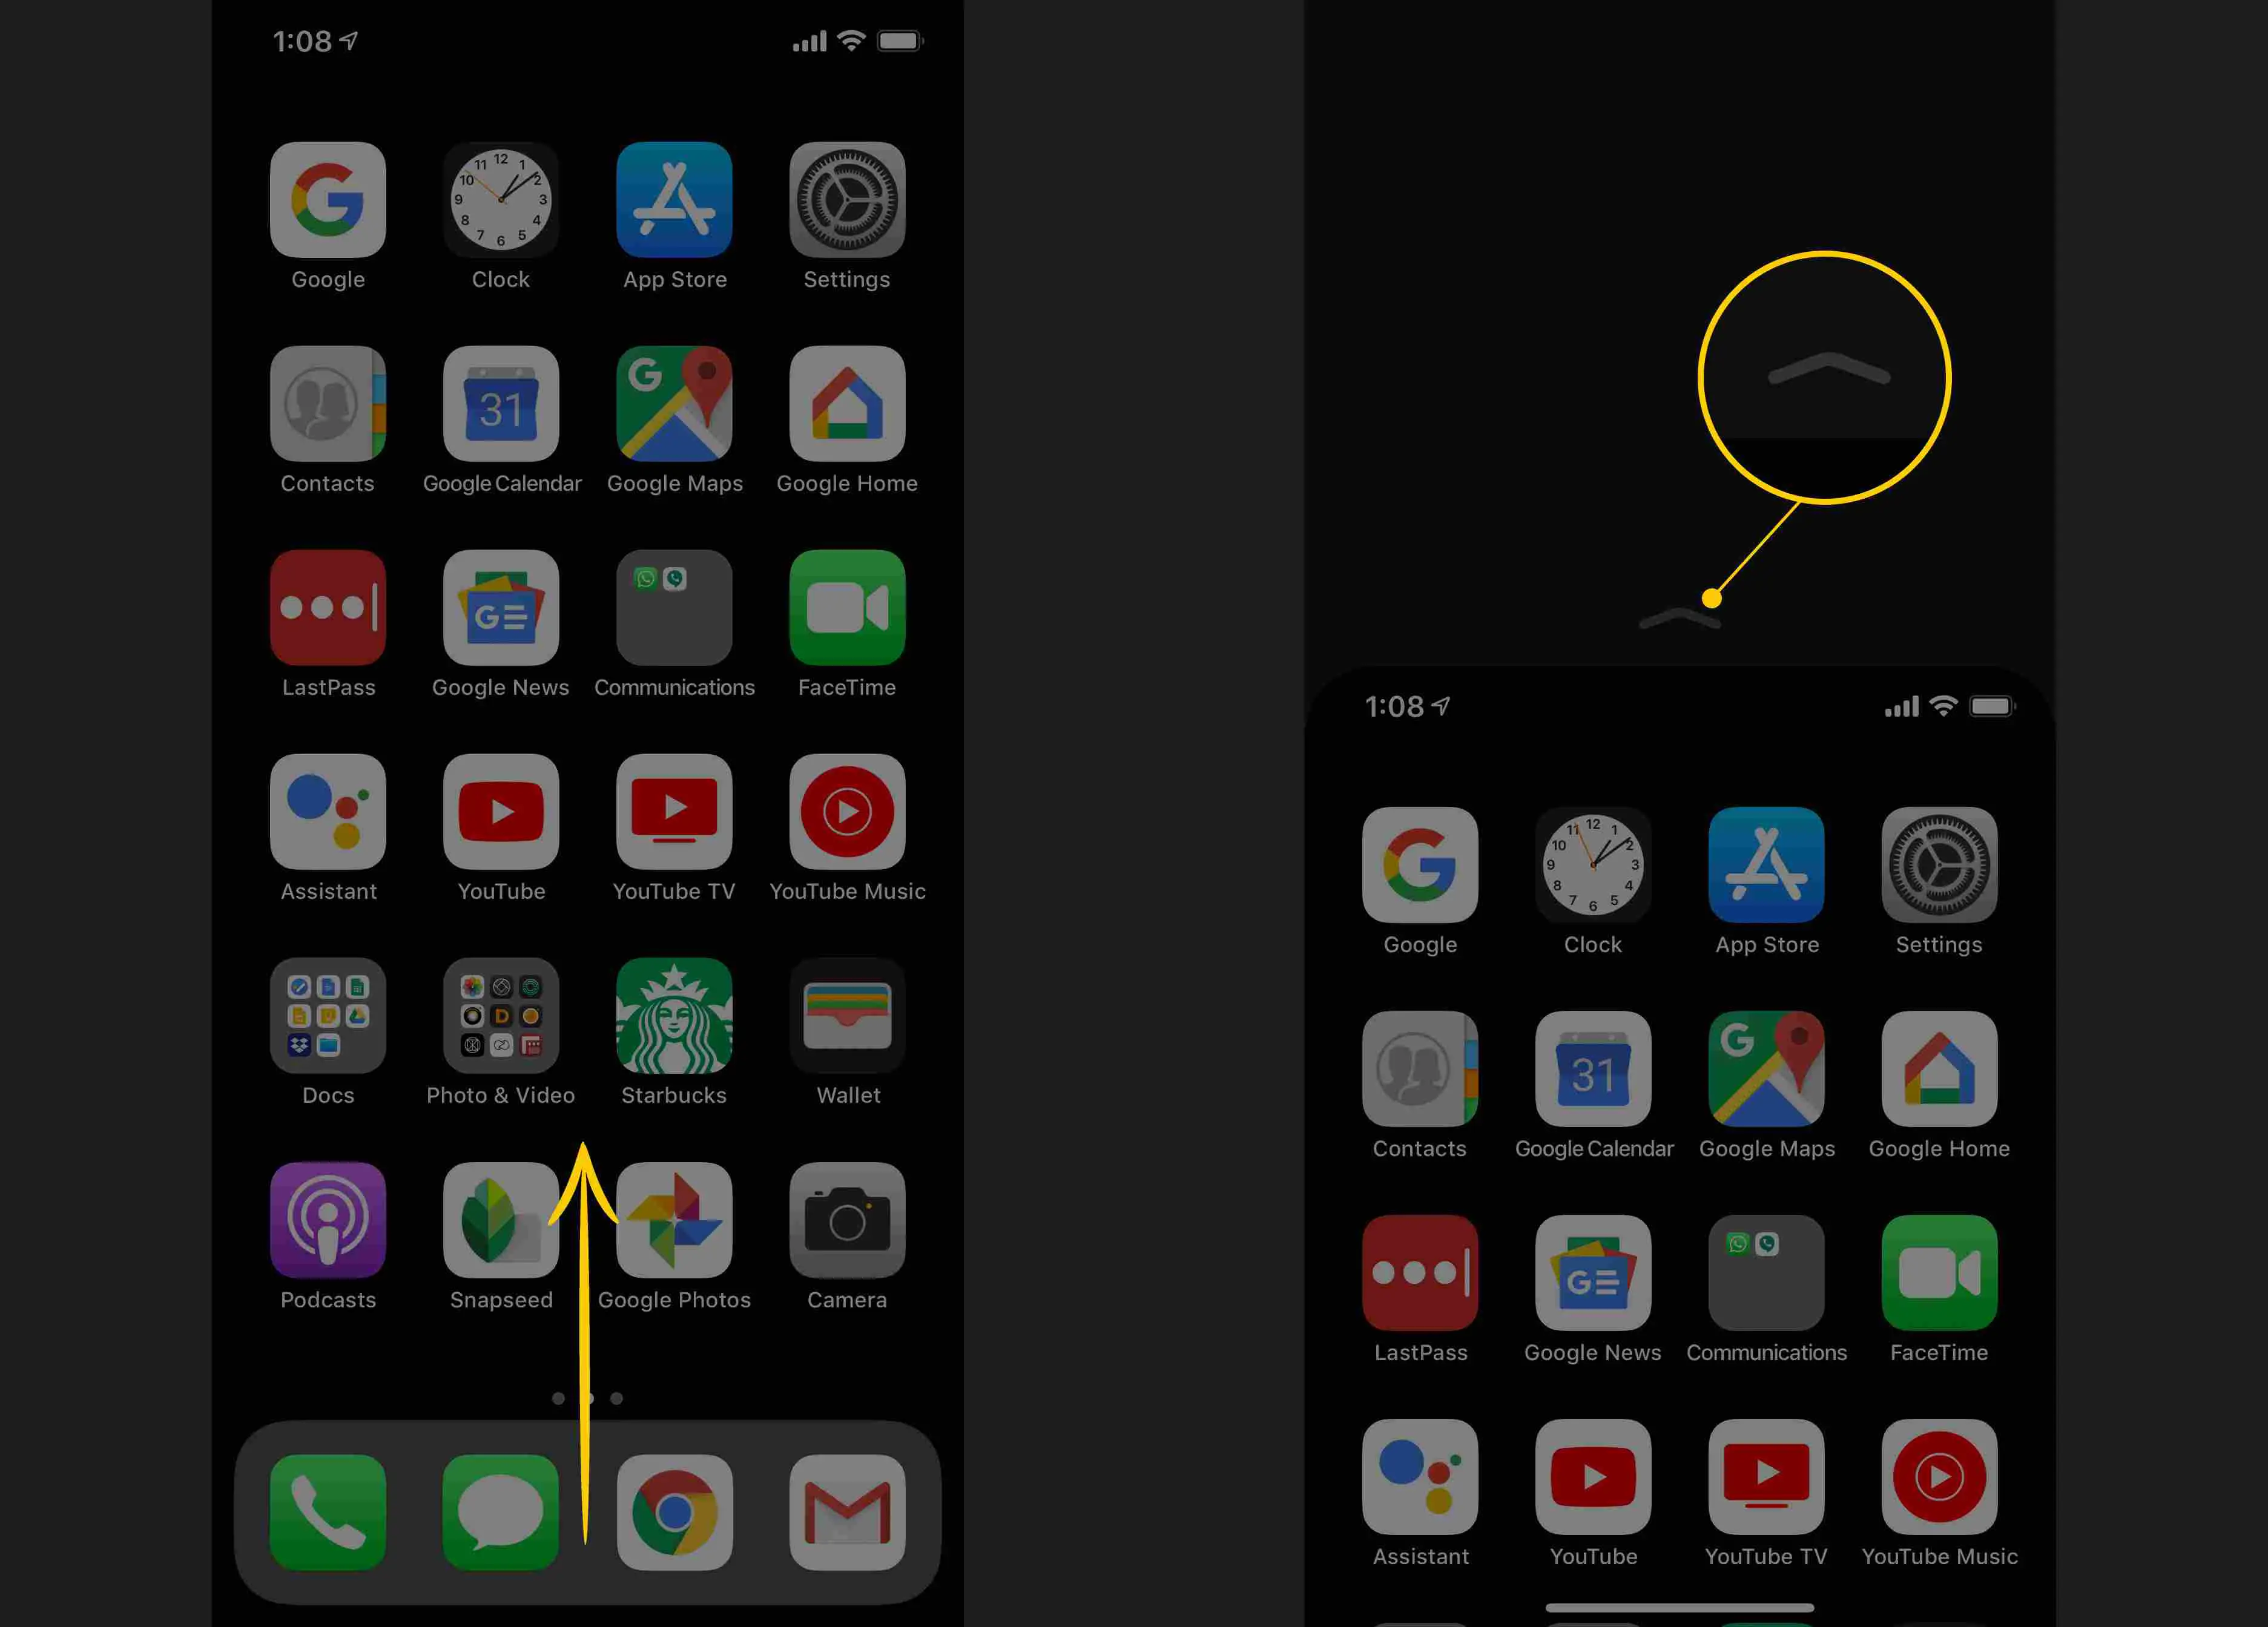 Deslize para cima no Dock, quilate na parte superior da tela do iPhone X